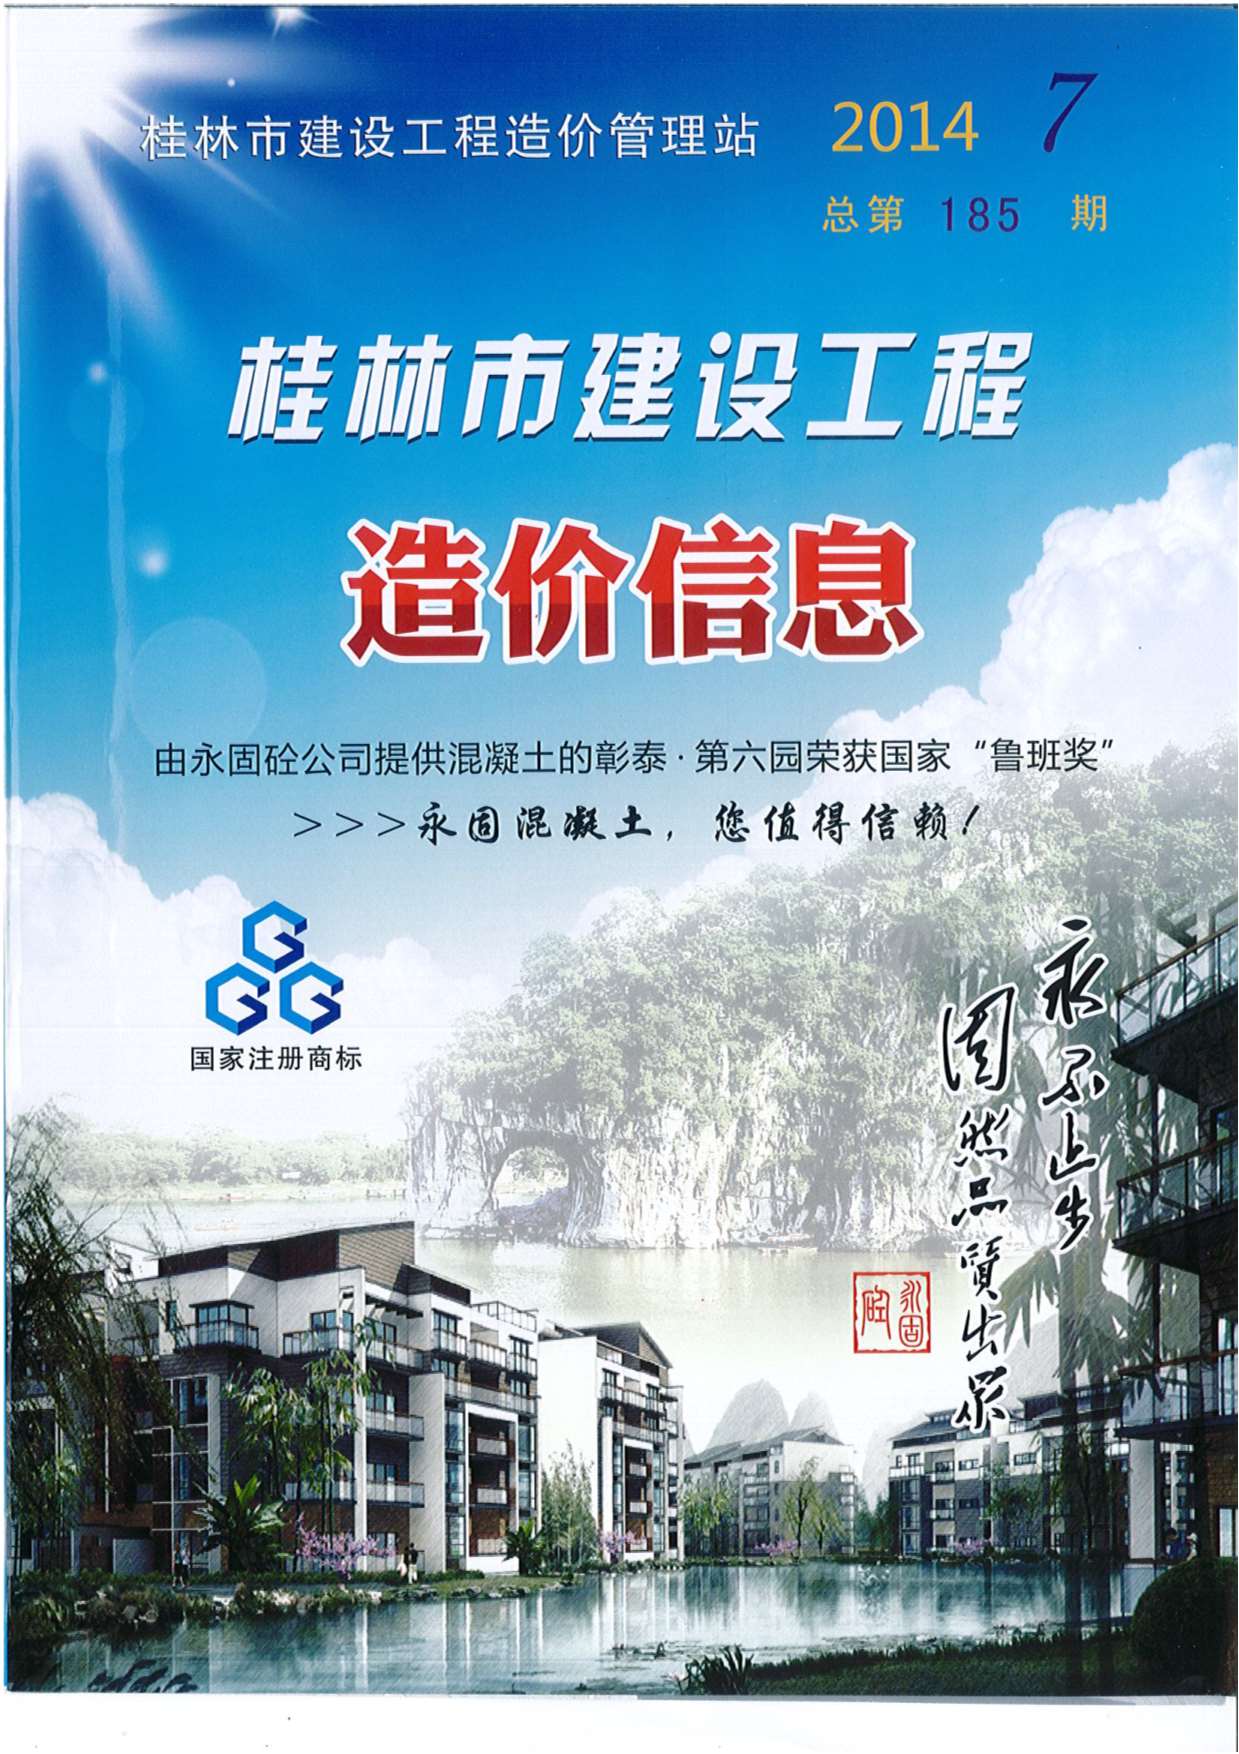 桂林市2014年7月建设工程造价信息